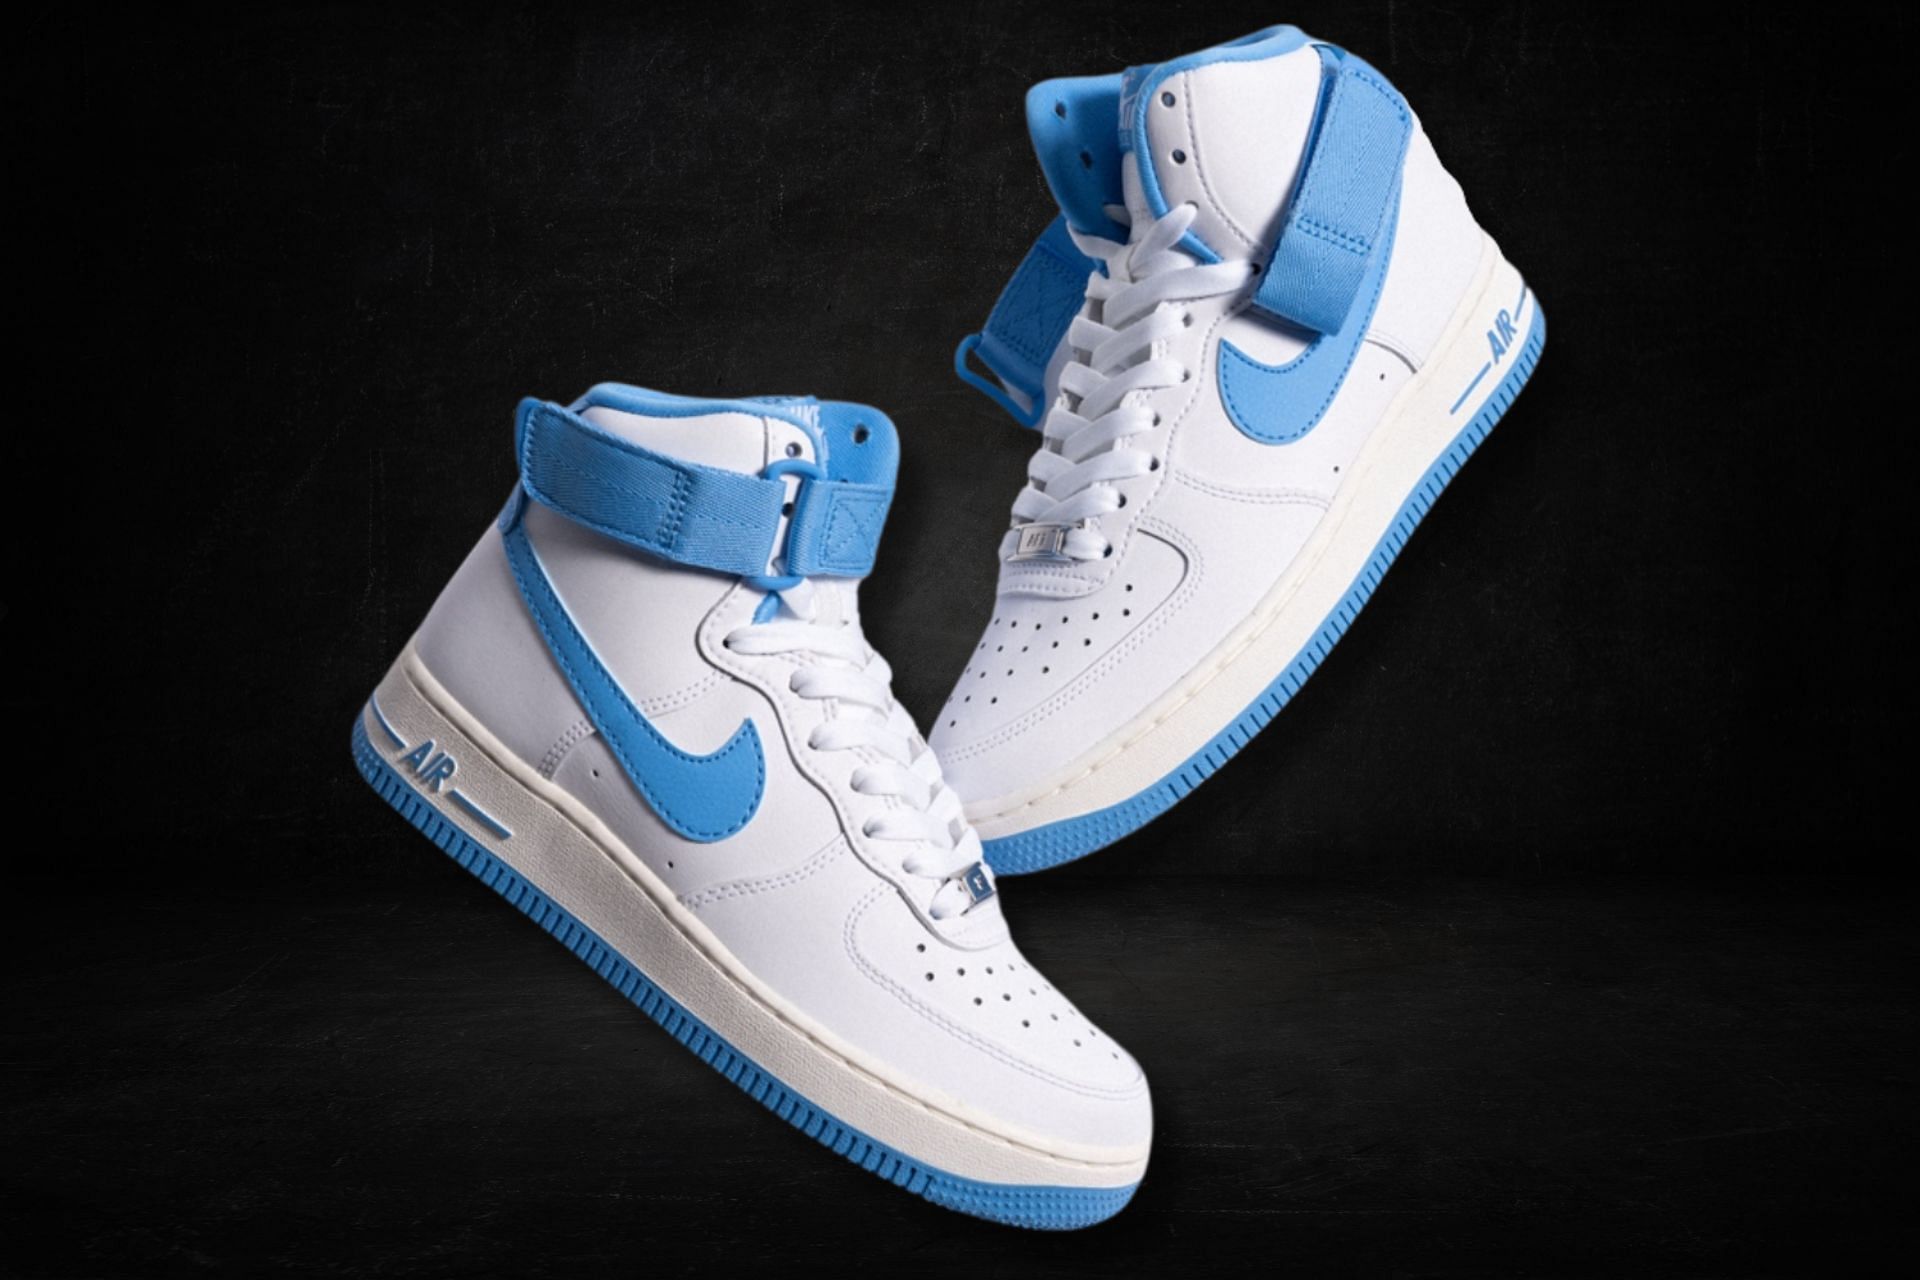 Nike Air Force 1 High University Blue sneakers (Image via Sportskeeda)